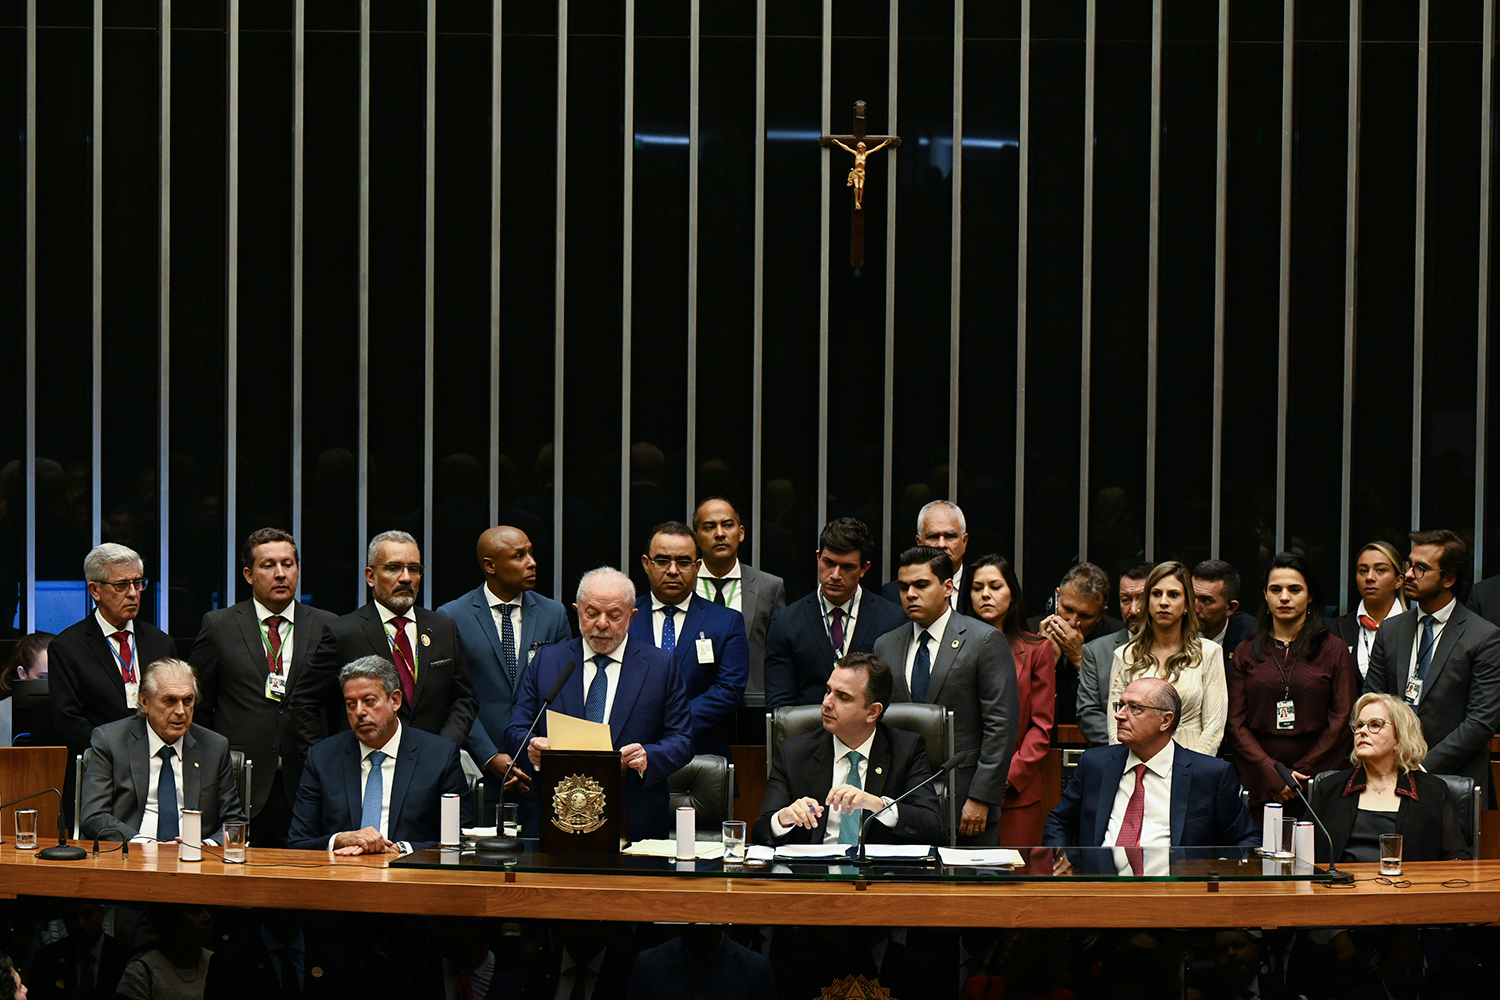 HARMONIA - Chefes do Executivo, Legislativo e Judiciário dividem a mesa na posse do presidente Lula